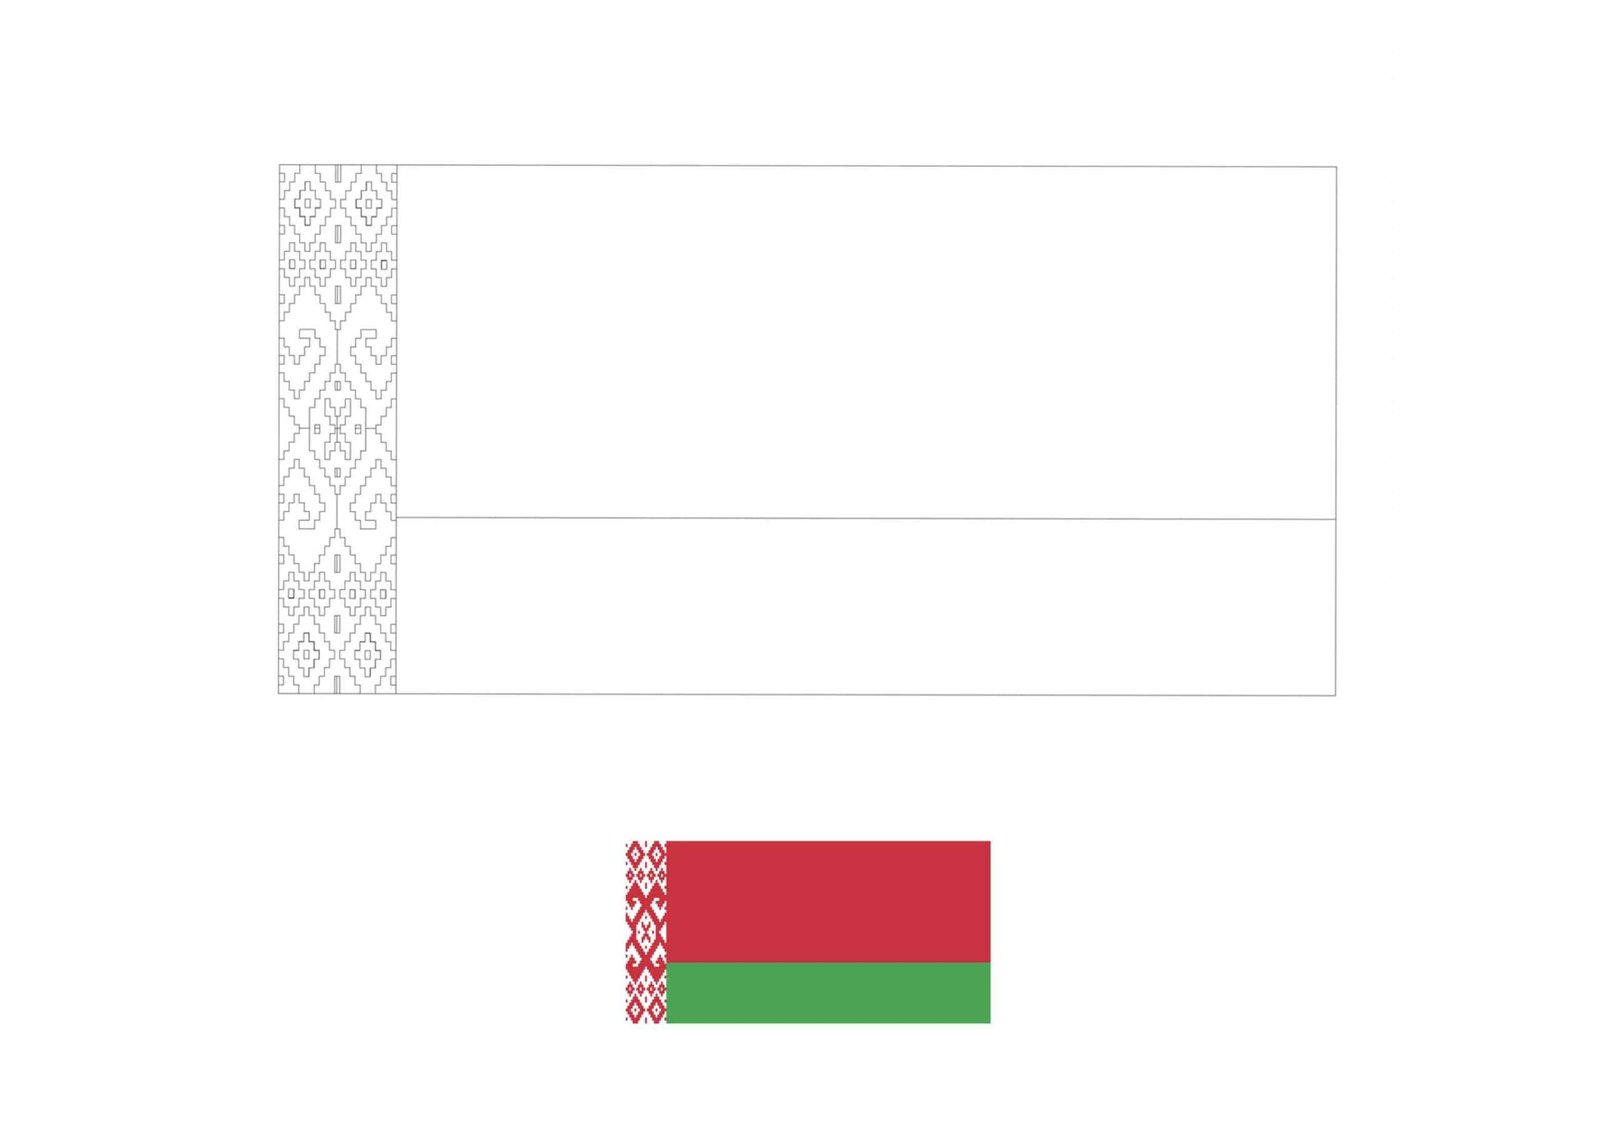 Wit-Rusland vlag kleurplaat met een voorbeeld